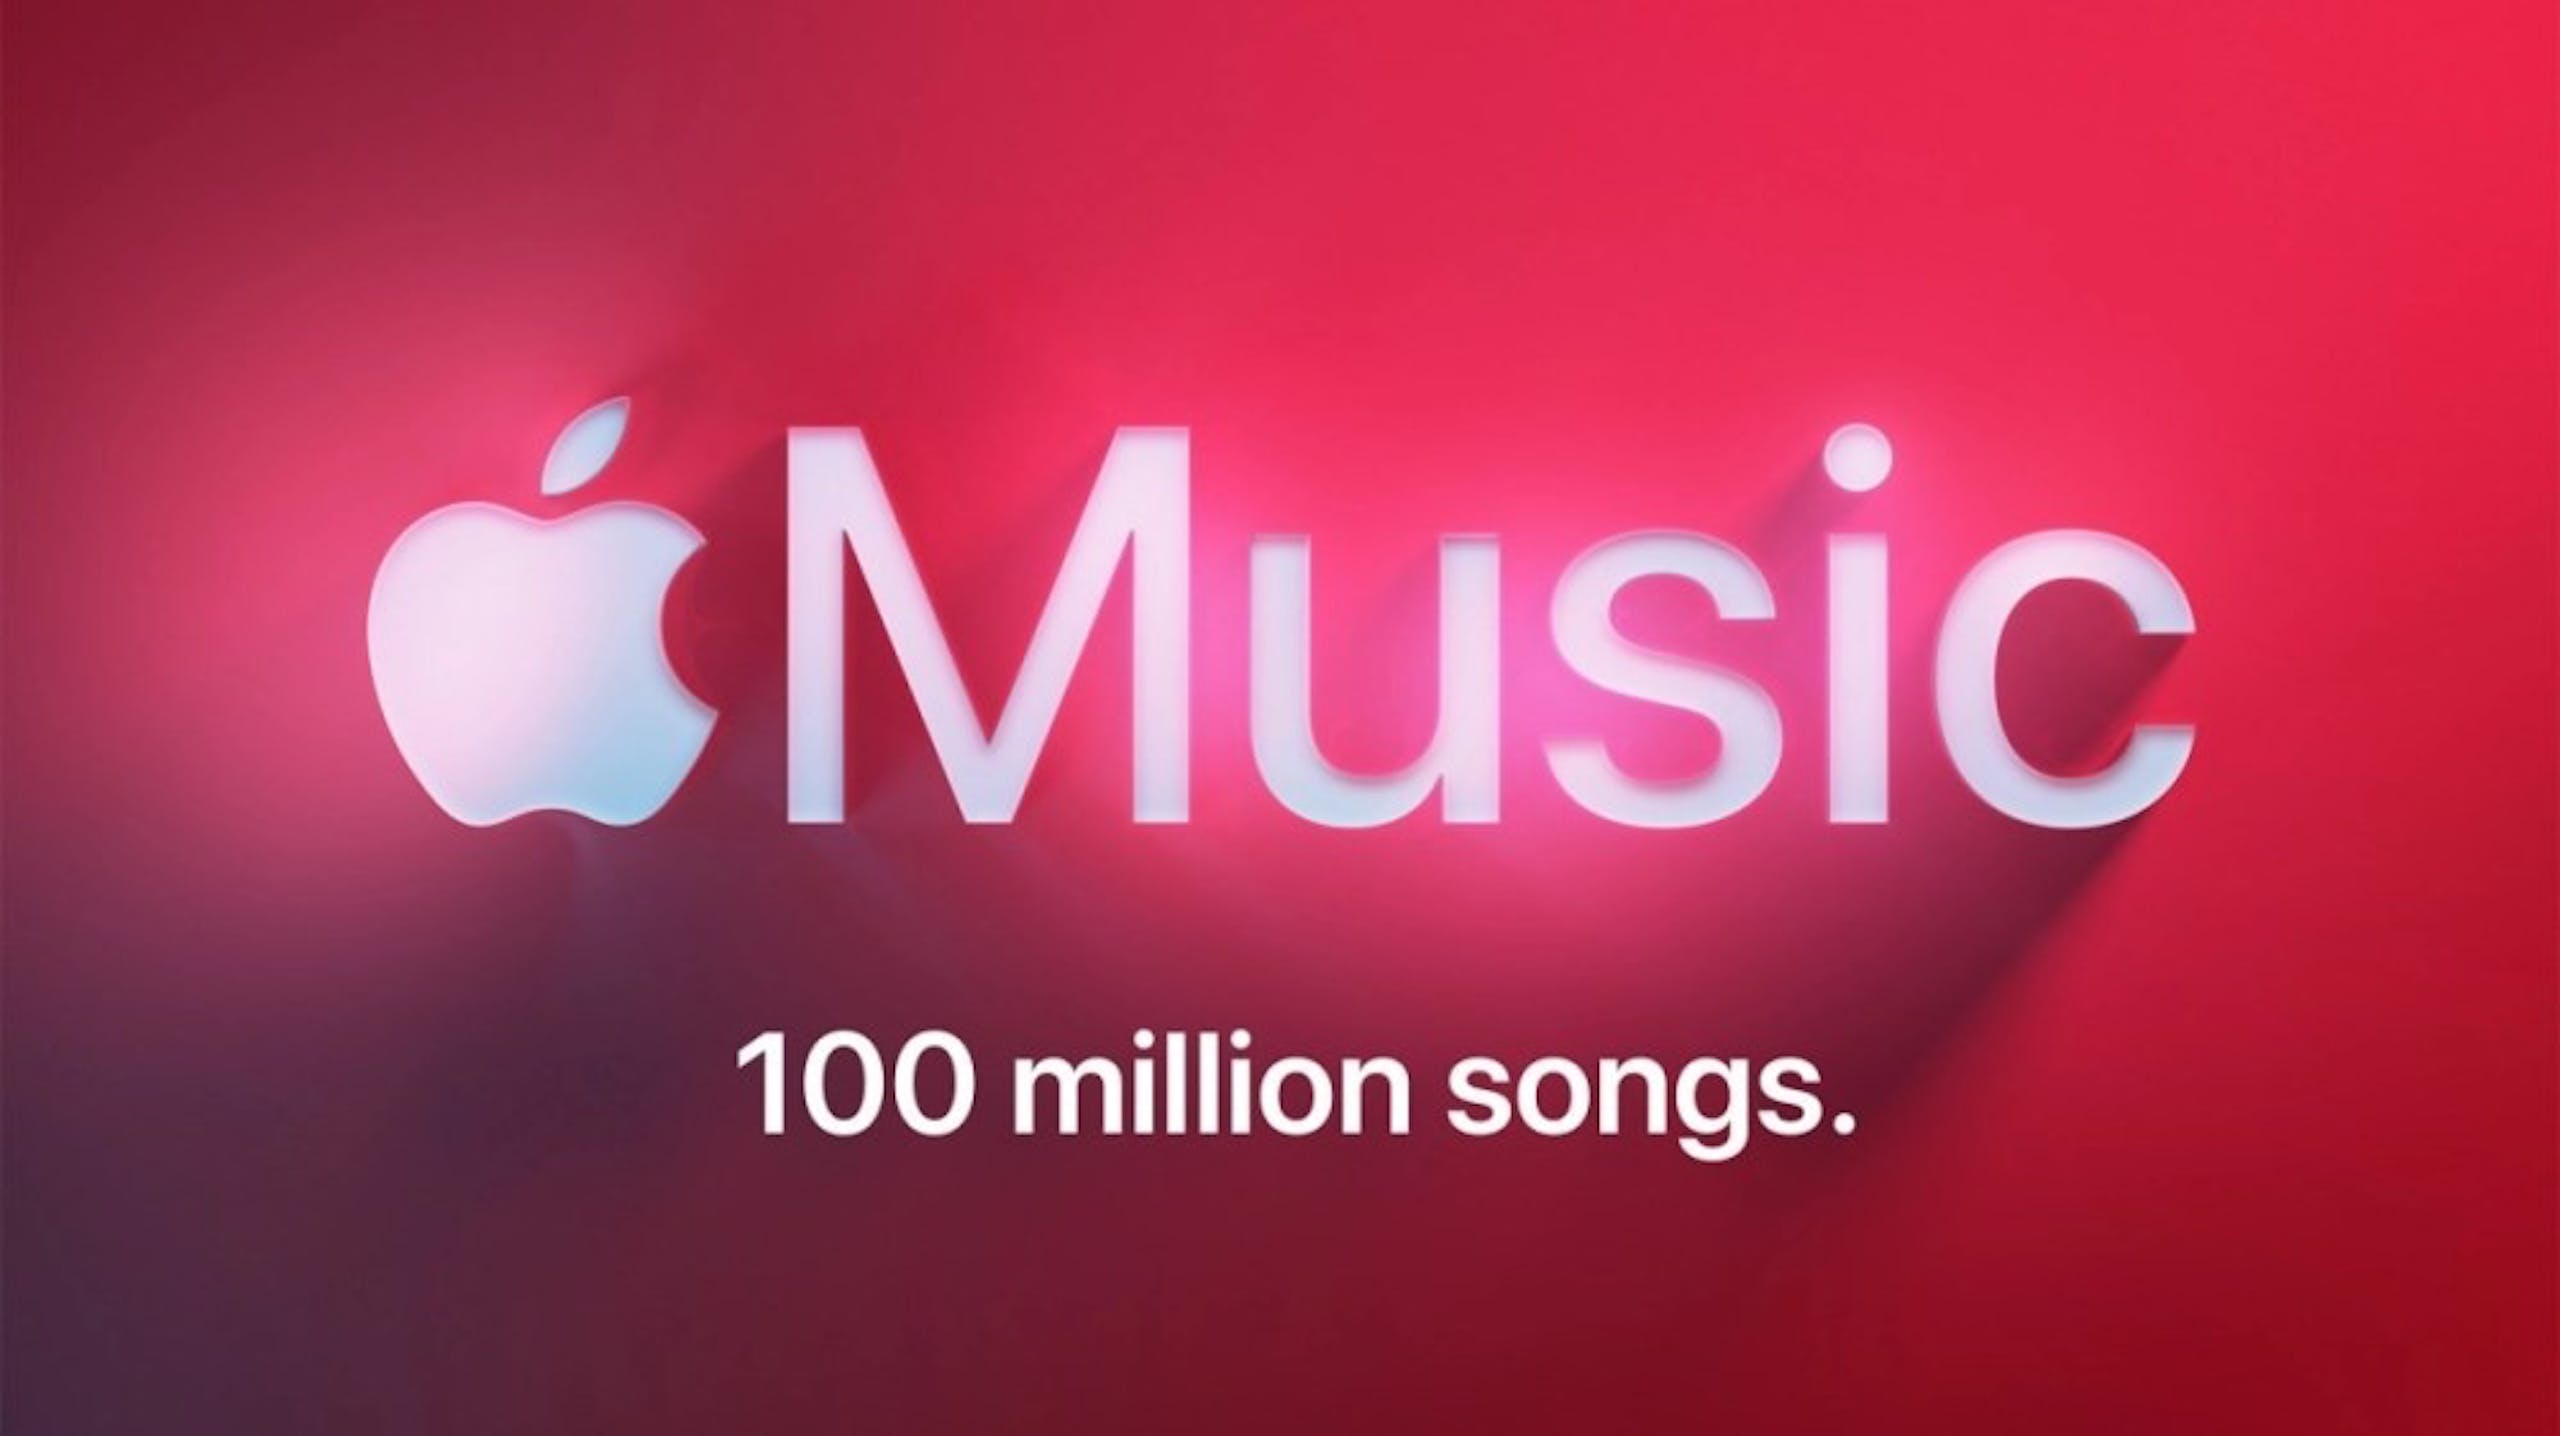 照片中提到了Music、100 million songs.，跟蘋果公司。有關，包含了領袖音樂、蘋果音樂、重音、歌曲、音樂流媒體服務